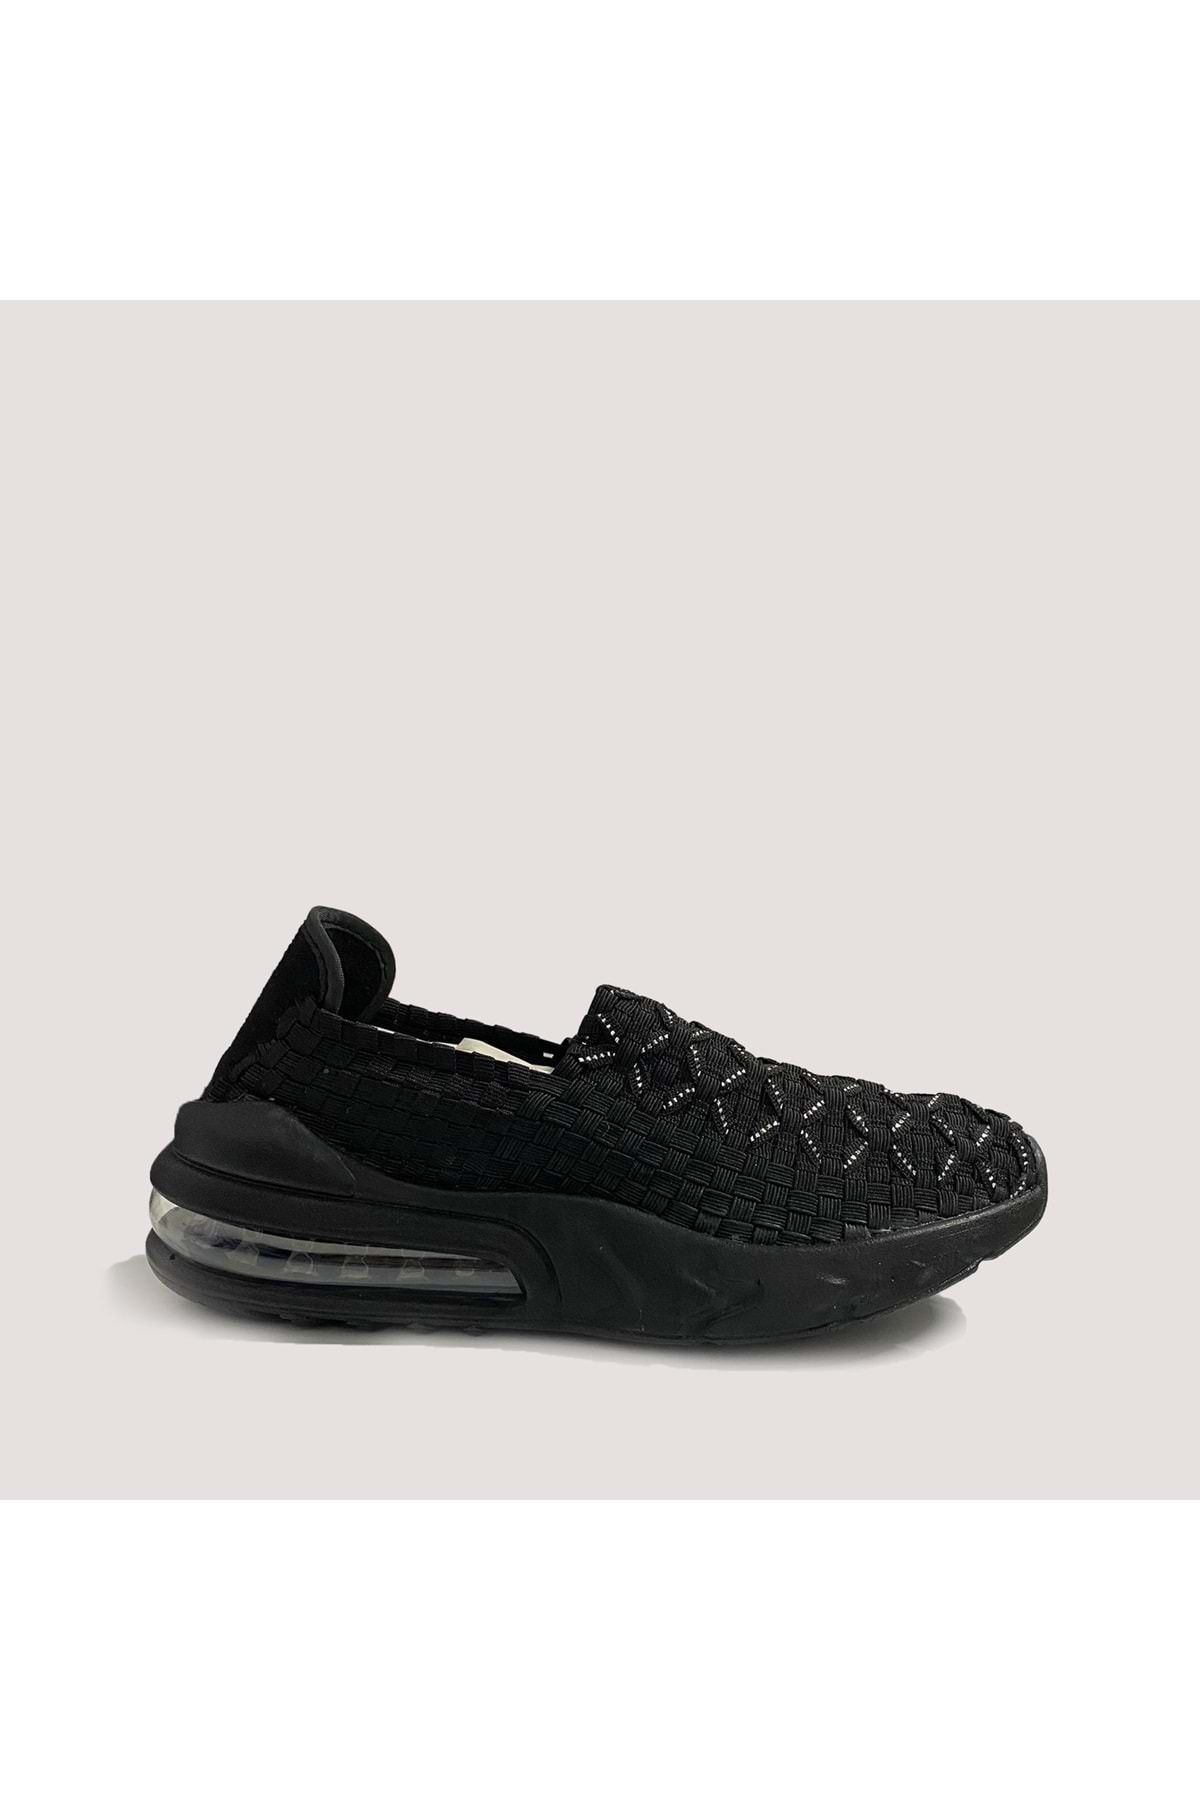 Venüs Spring 74 Kadın Spor Ayakkabı - Siyah - 38